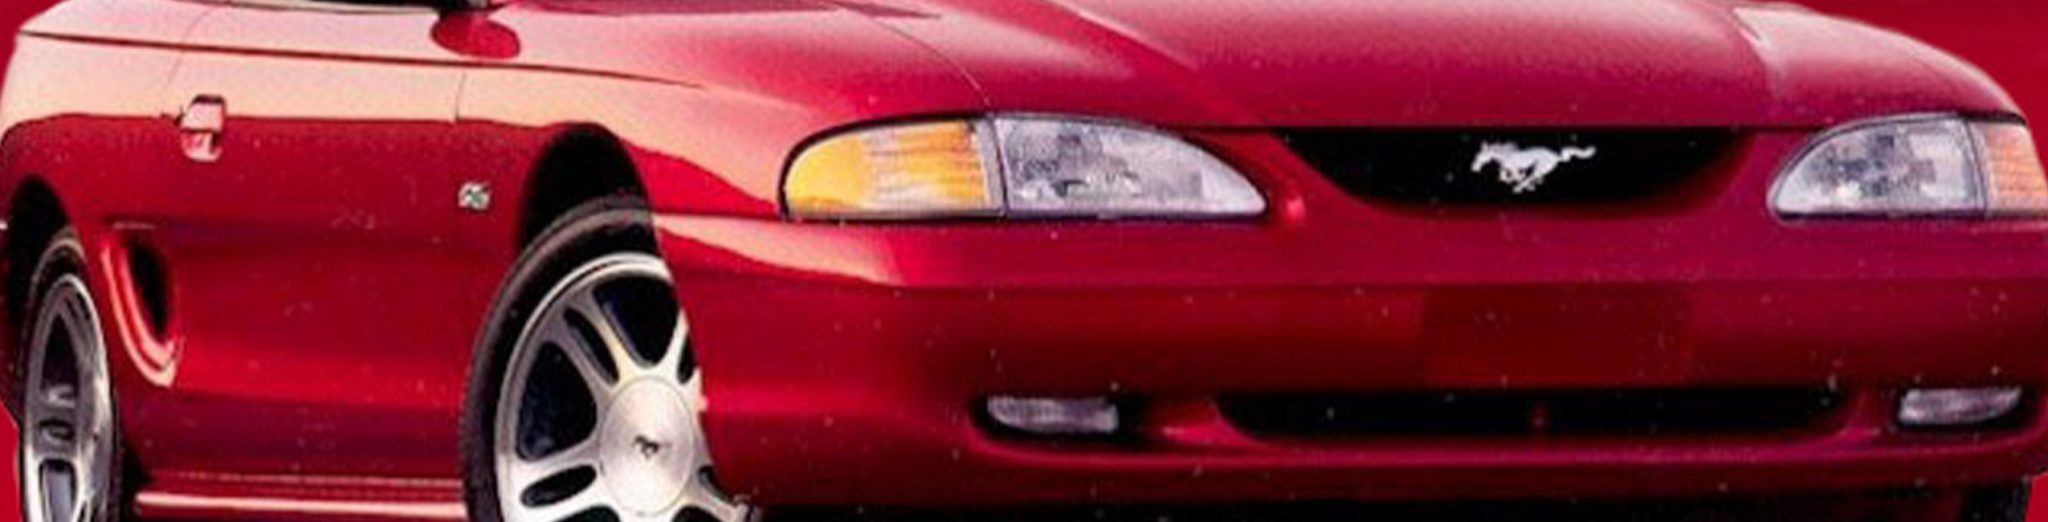 1996 - 98 Mustang GT (4.6 2V)